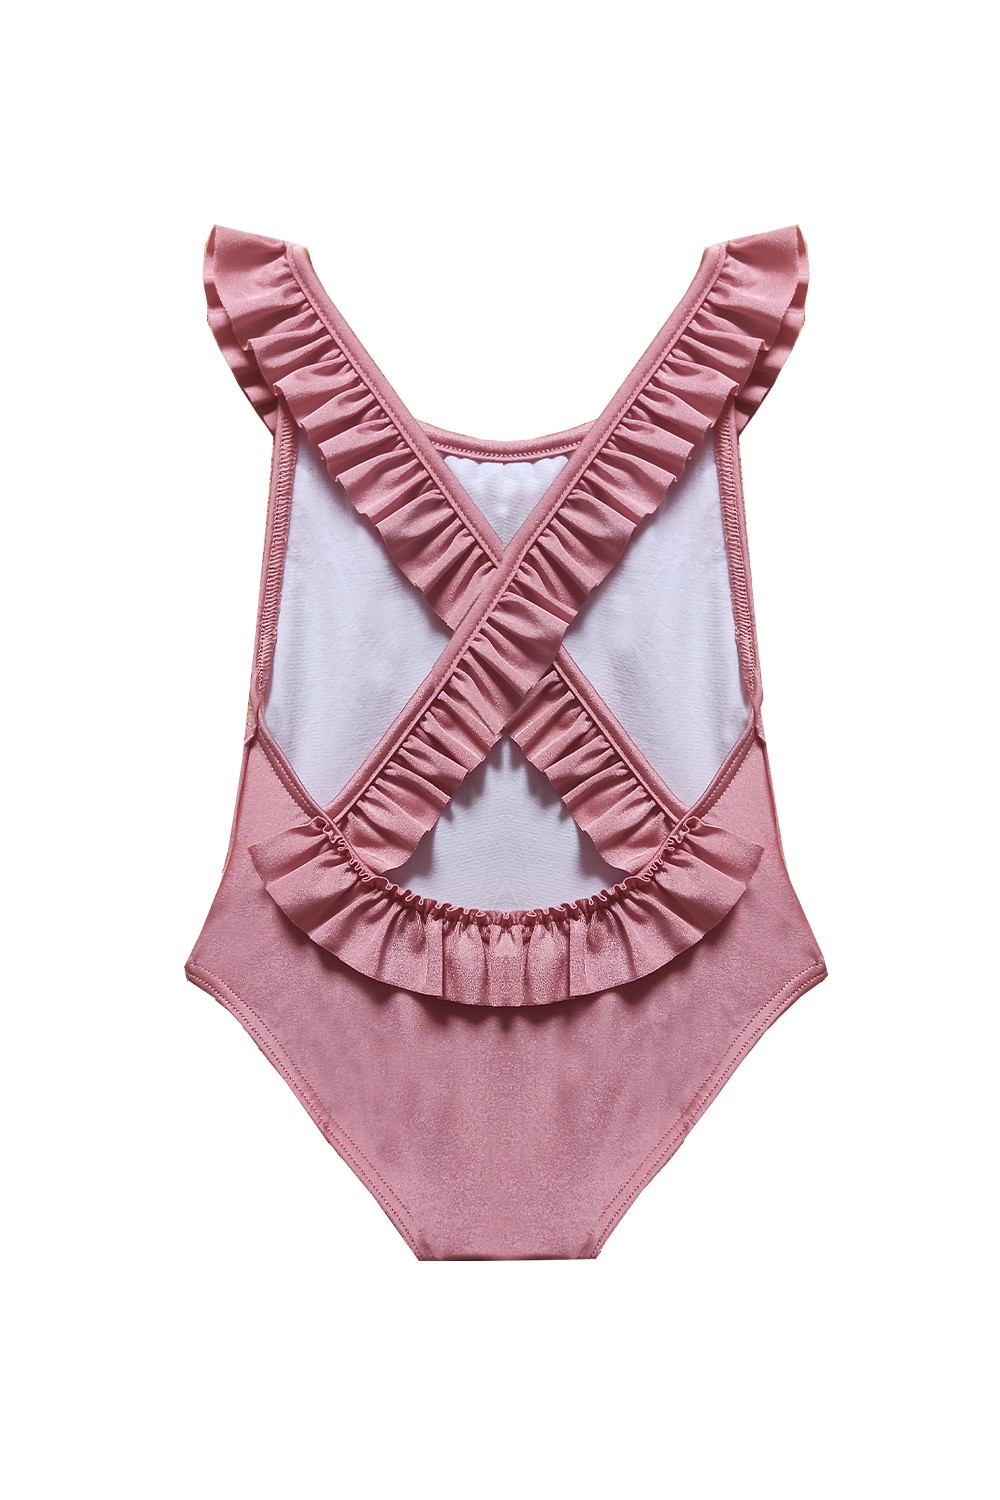 Dusty Pink Baby Cross Ruffles Swimsuit